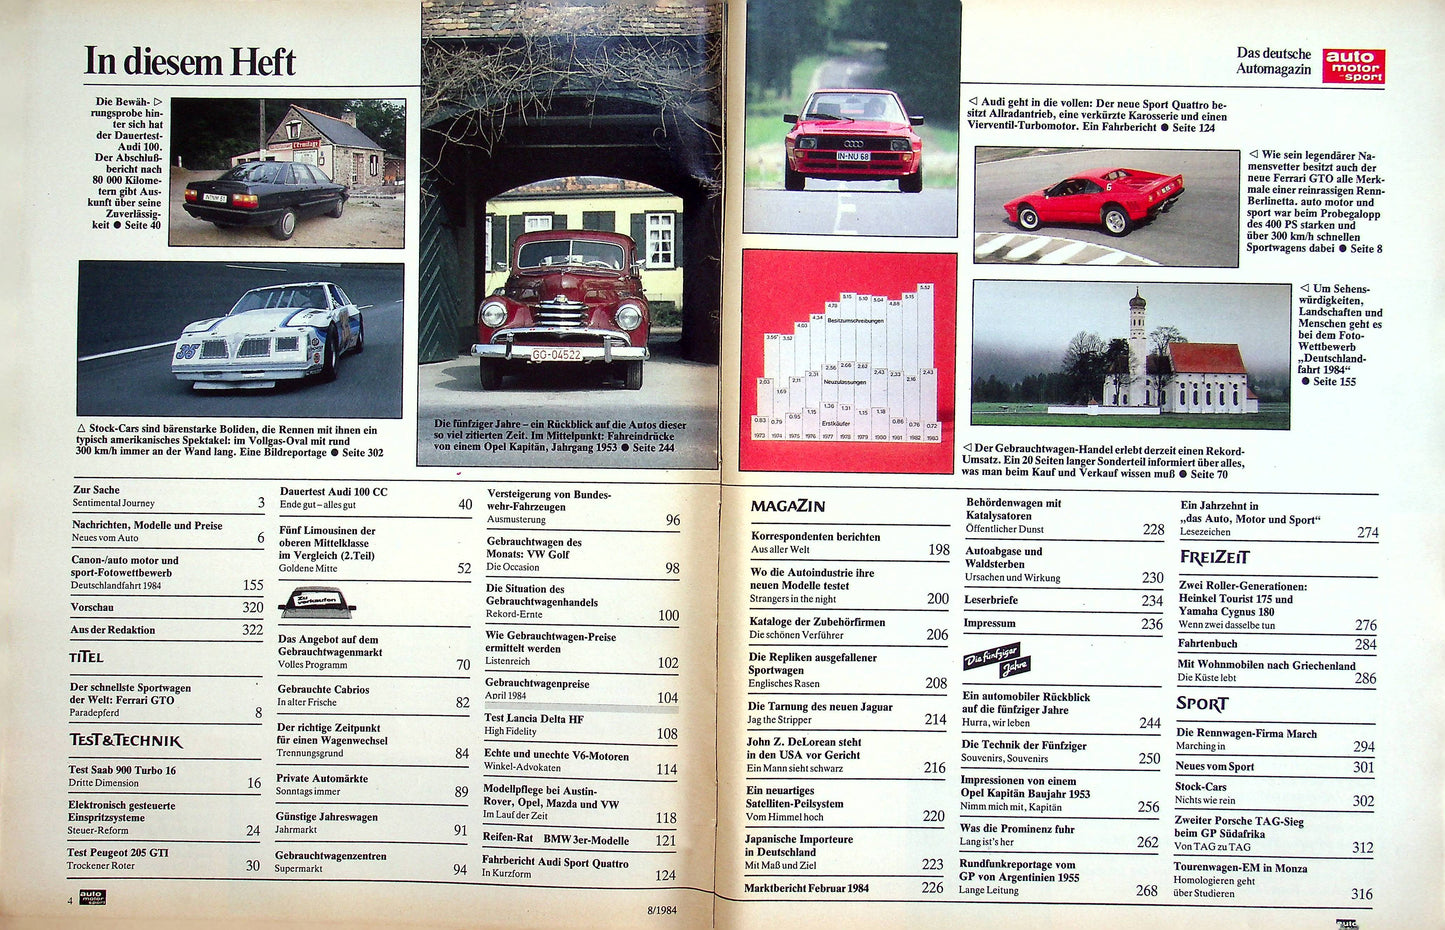 Auto Motor und Sport 08/1984